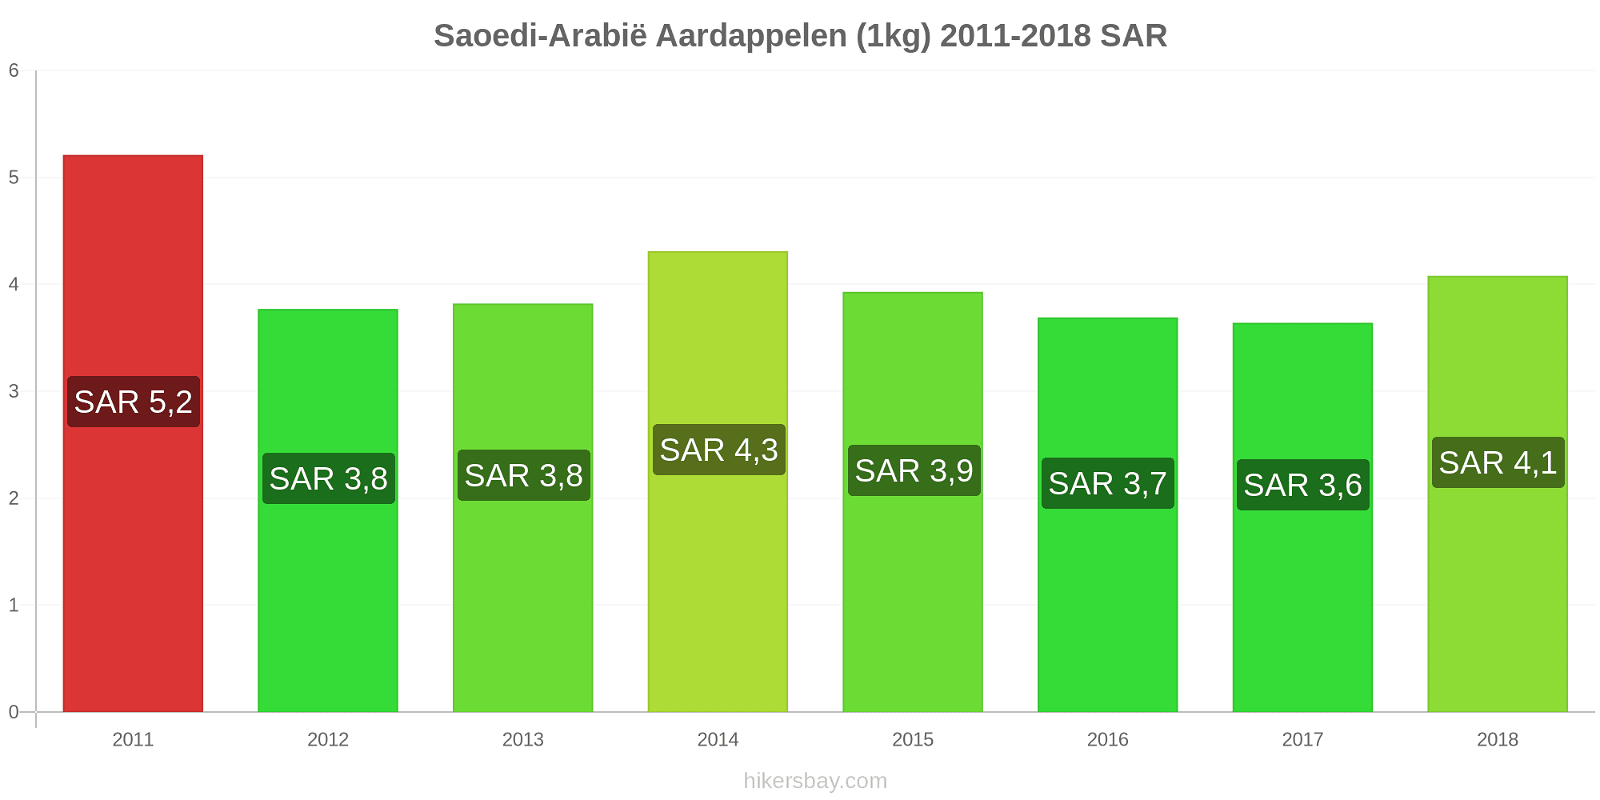 Saoedi-Arabië prijswijzigingen Aardappelen (1kg) hikersbay.com